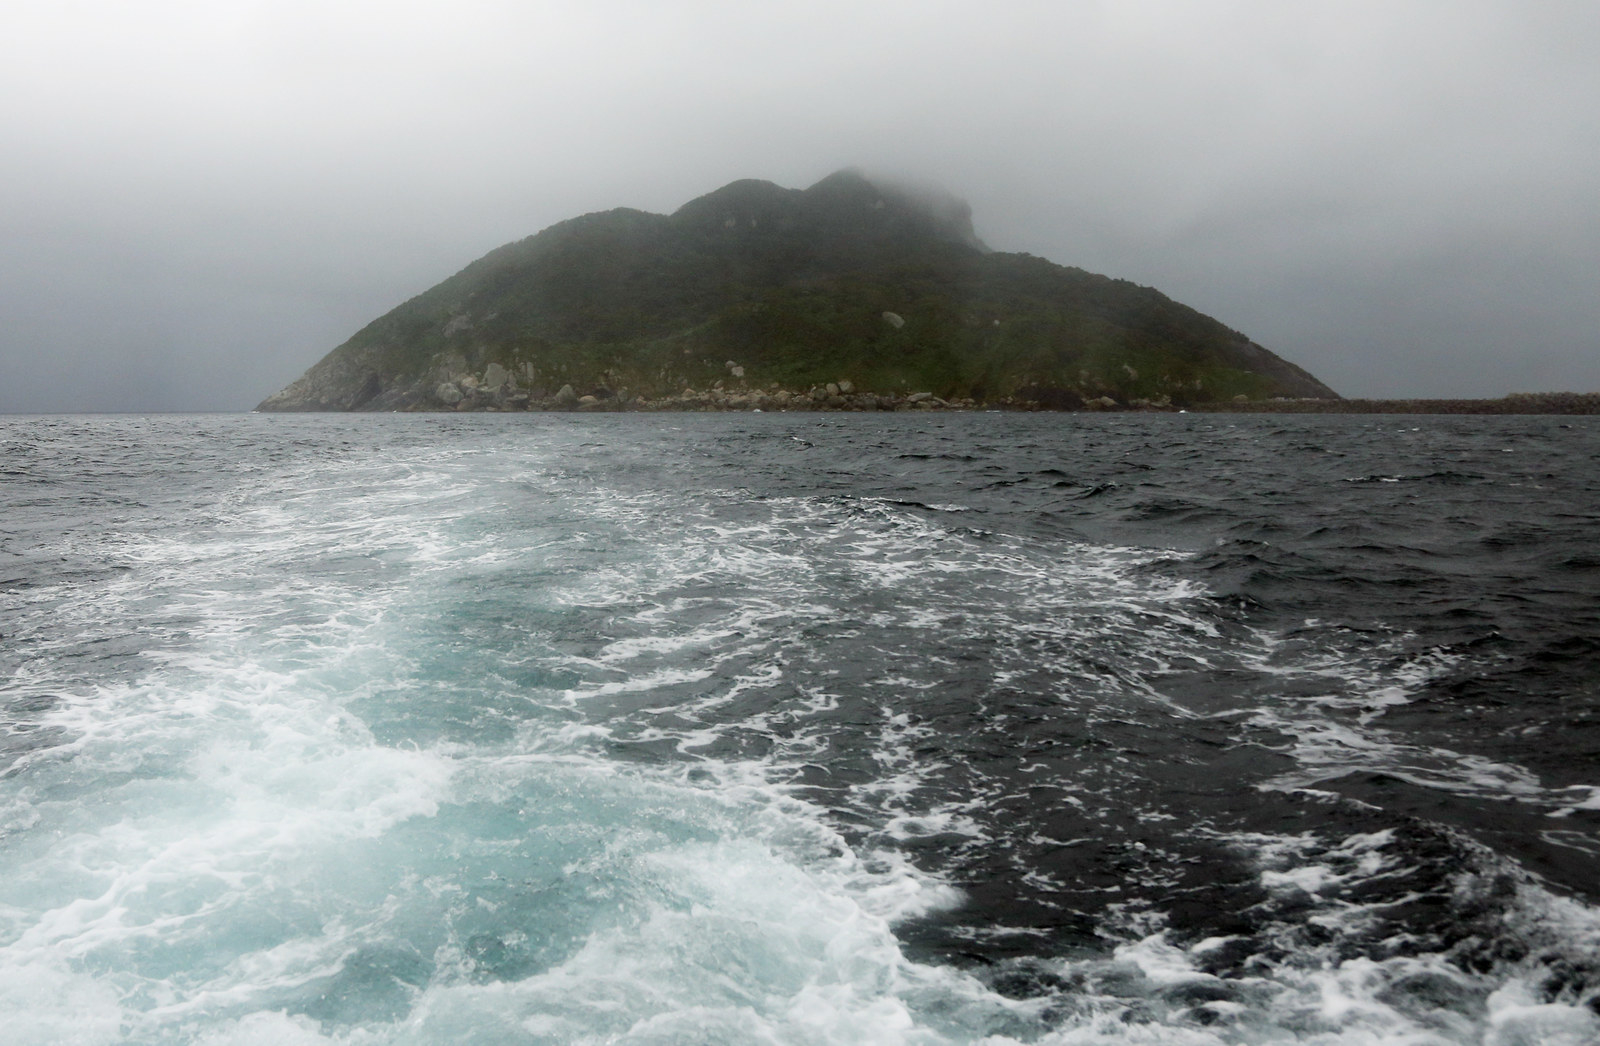 沖ノ島が世界遺産登録決定 11枚の写真でみる 手つかずの島